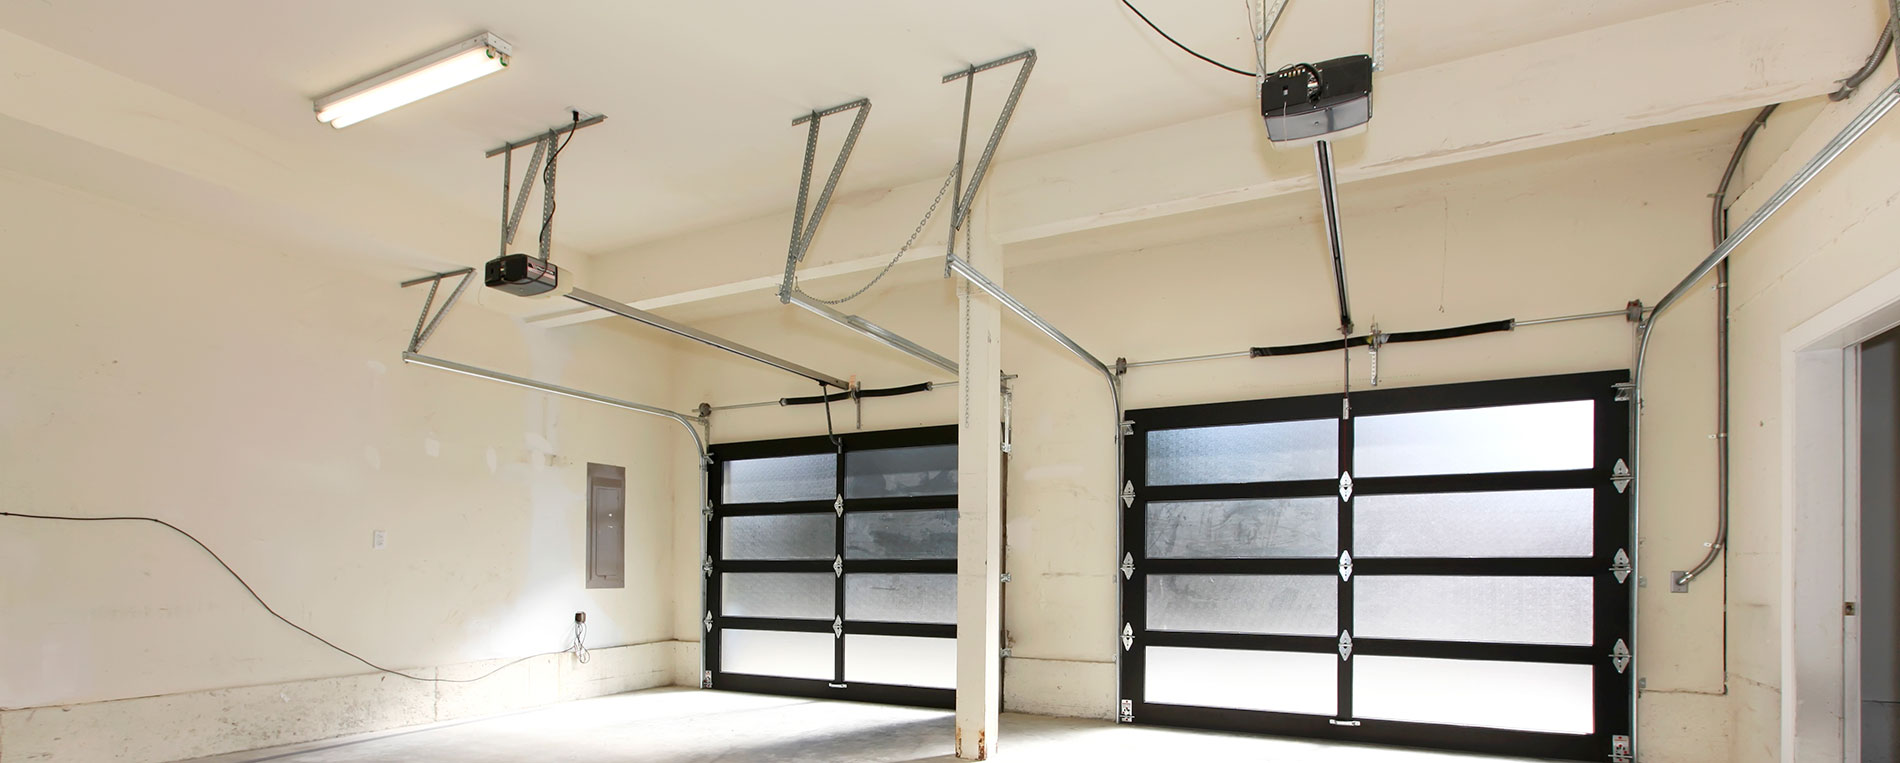 Track Replacement For Garage Door In Orangevale